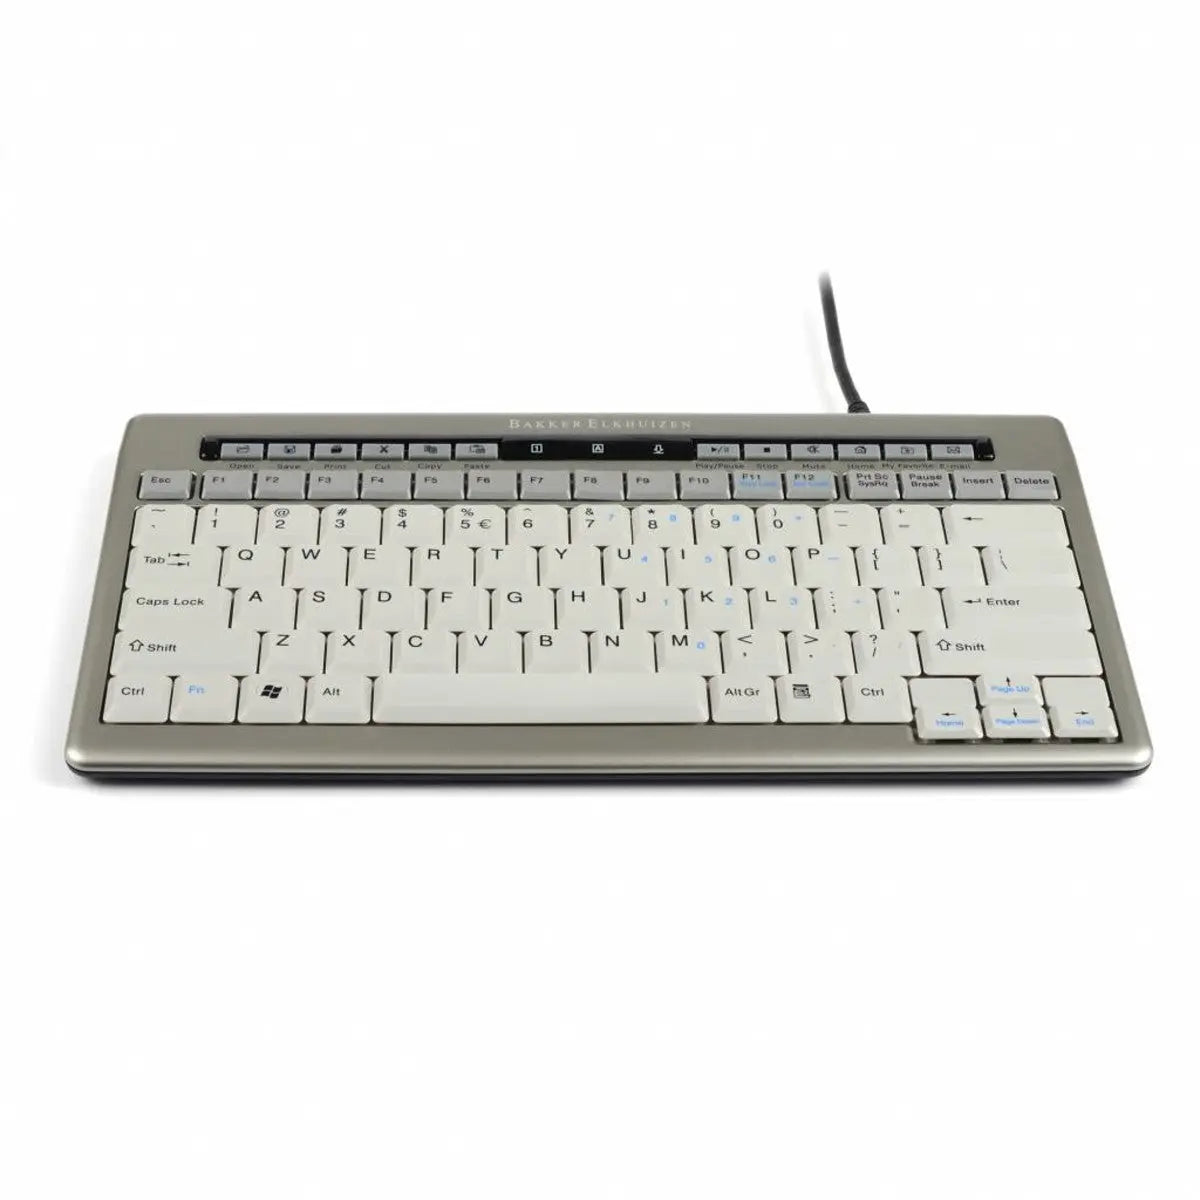 BakkerElkhuizen S-board 840 USB hub toetsenbord - bedraad